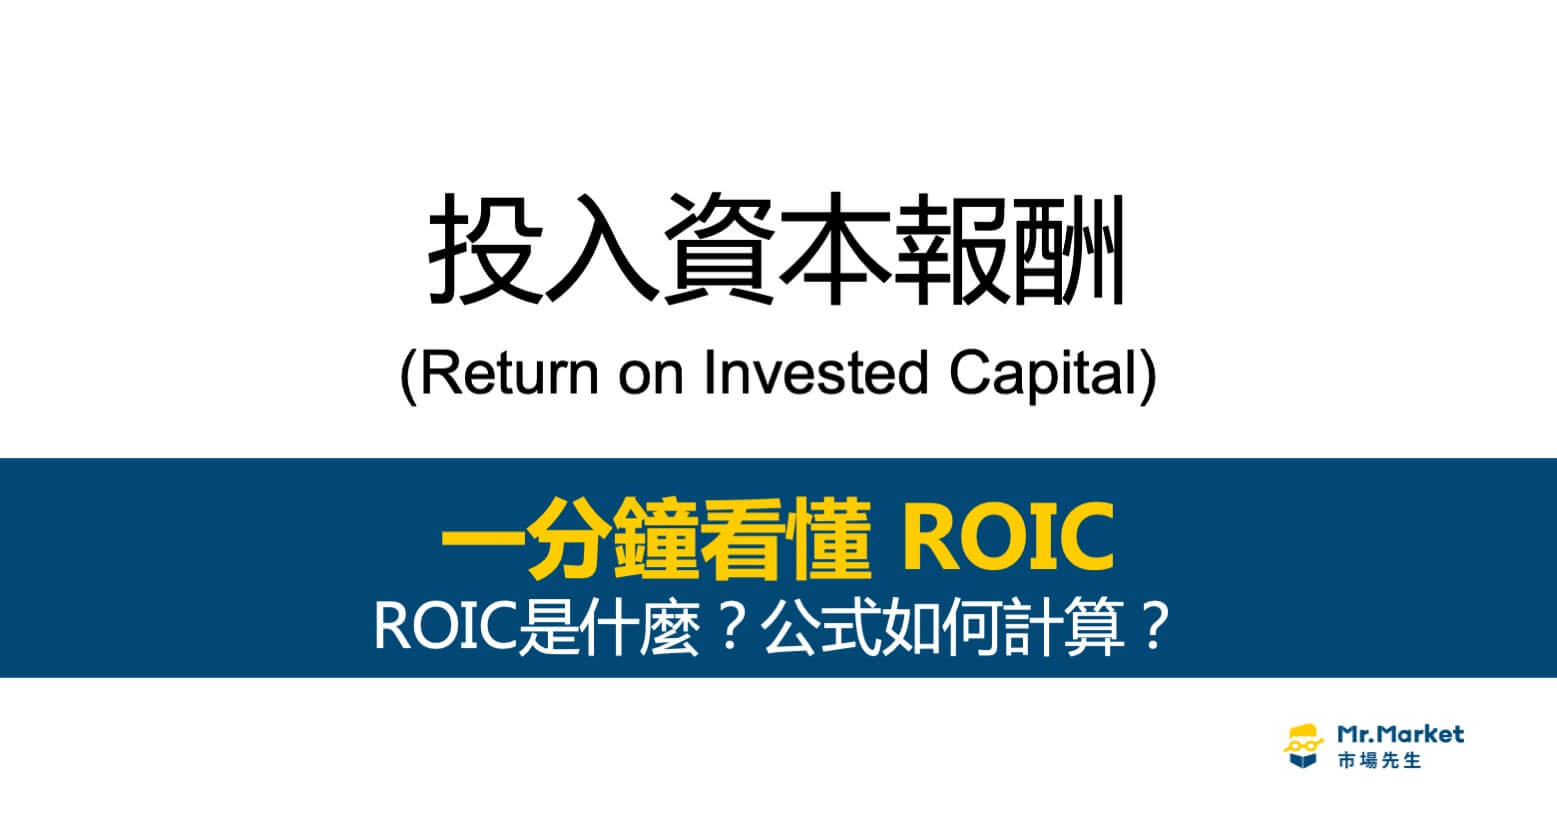 ROIC投入資本報酬是什麼